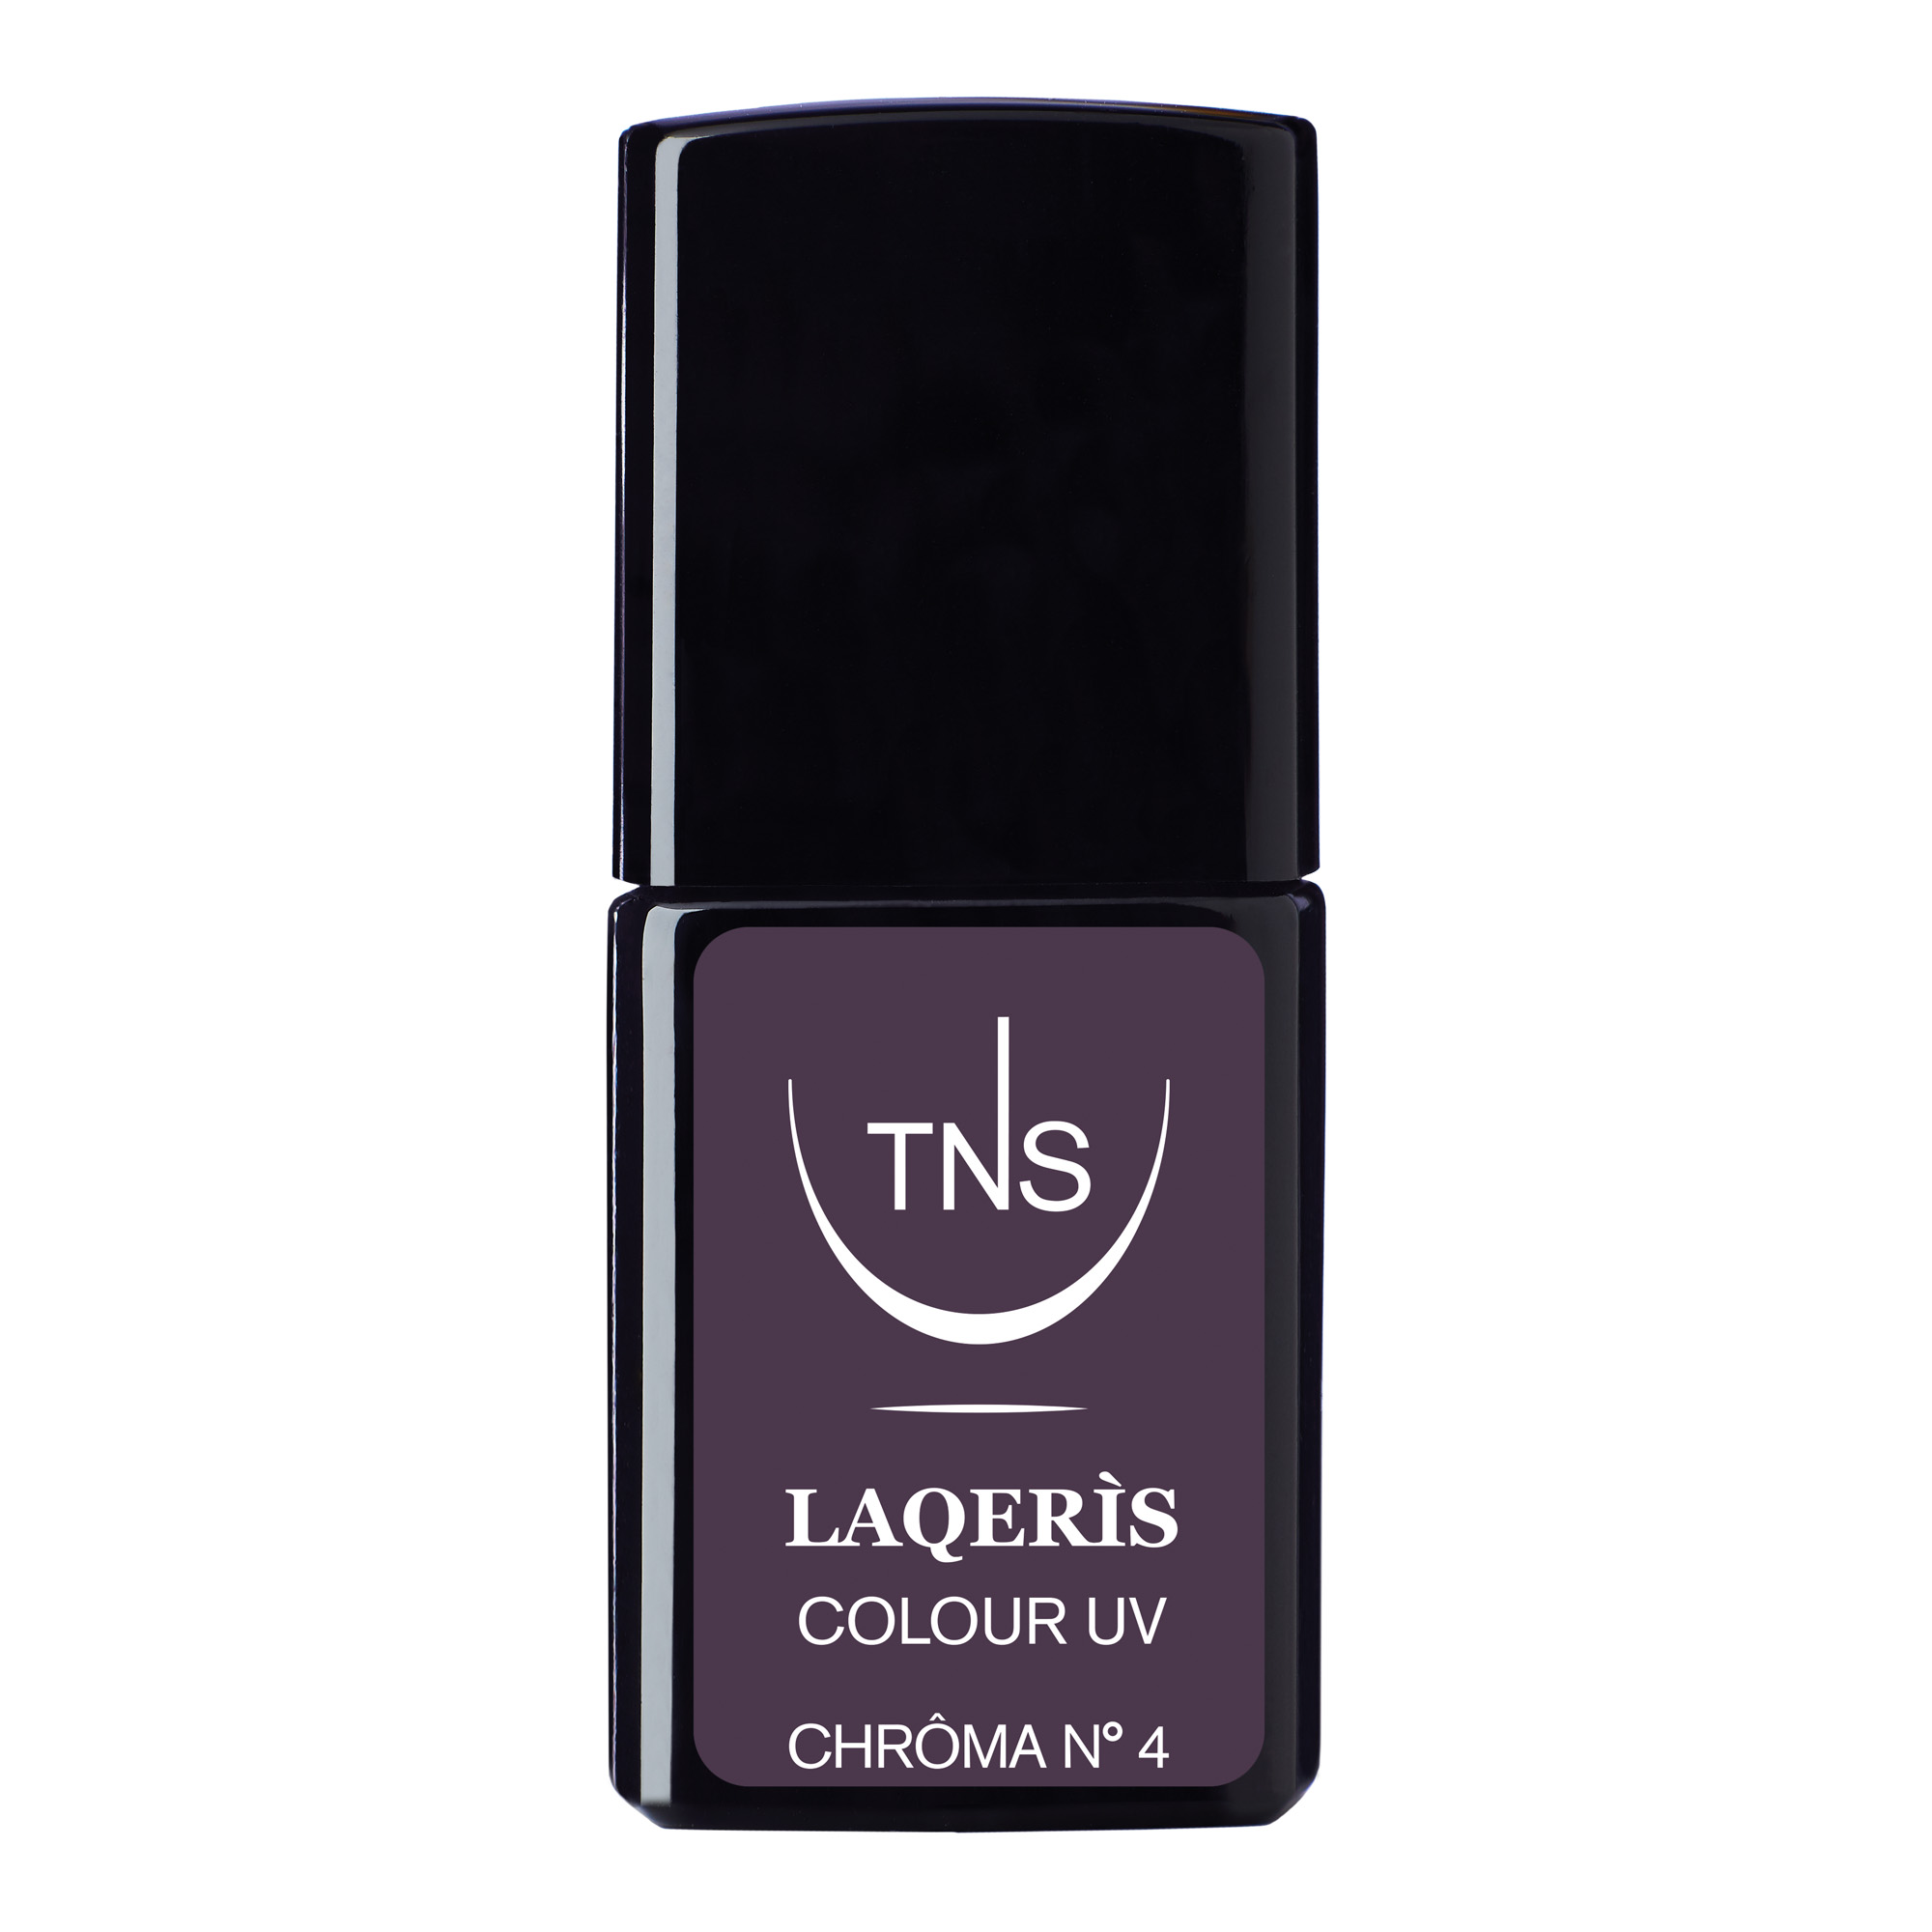 Vernis à ongles semi-permanent violet Chroma N.4 10 ml Laqerìs TNS